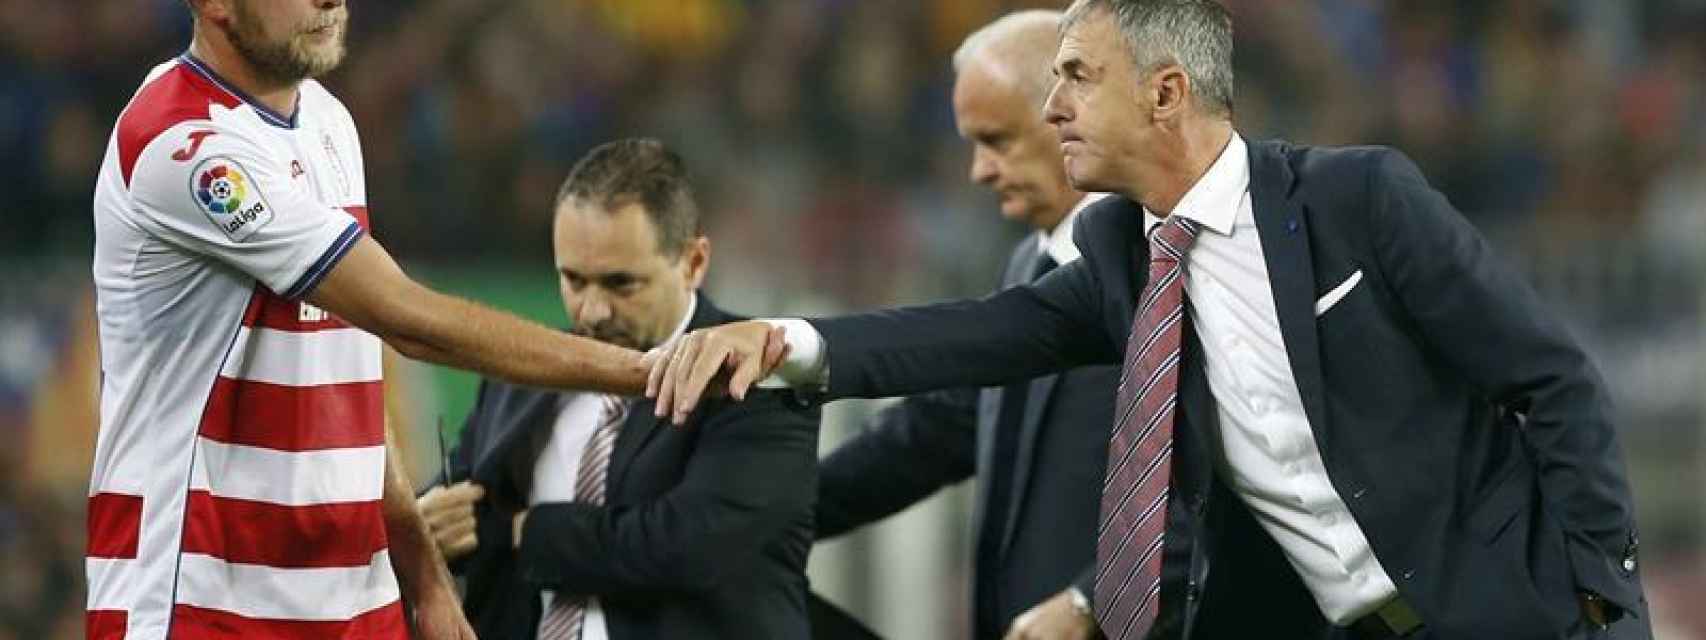 Lucas Alcaraz saluda a Kravets durante el partido contra el Barcelona.